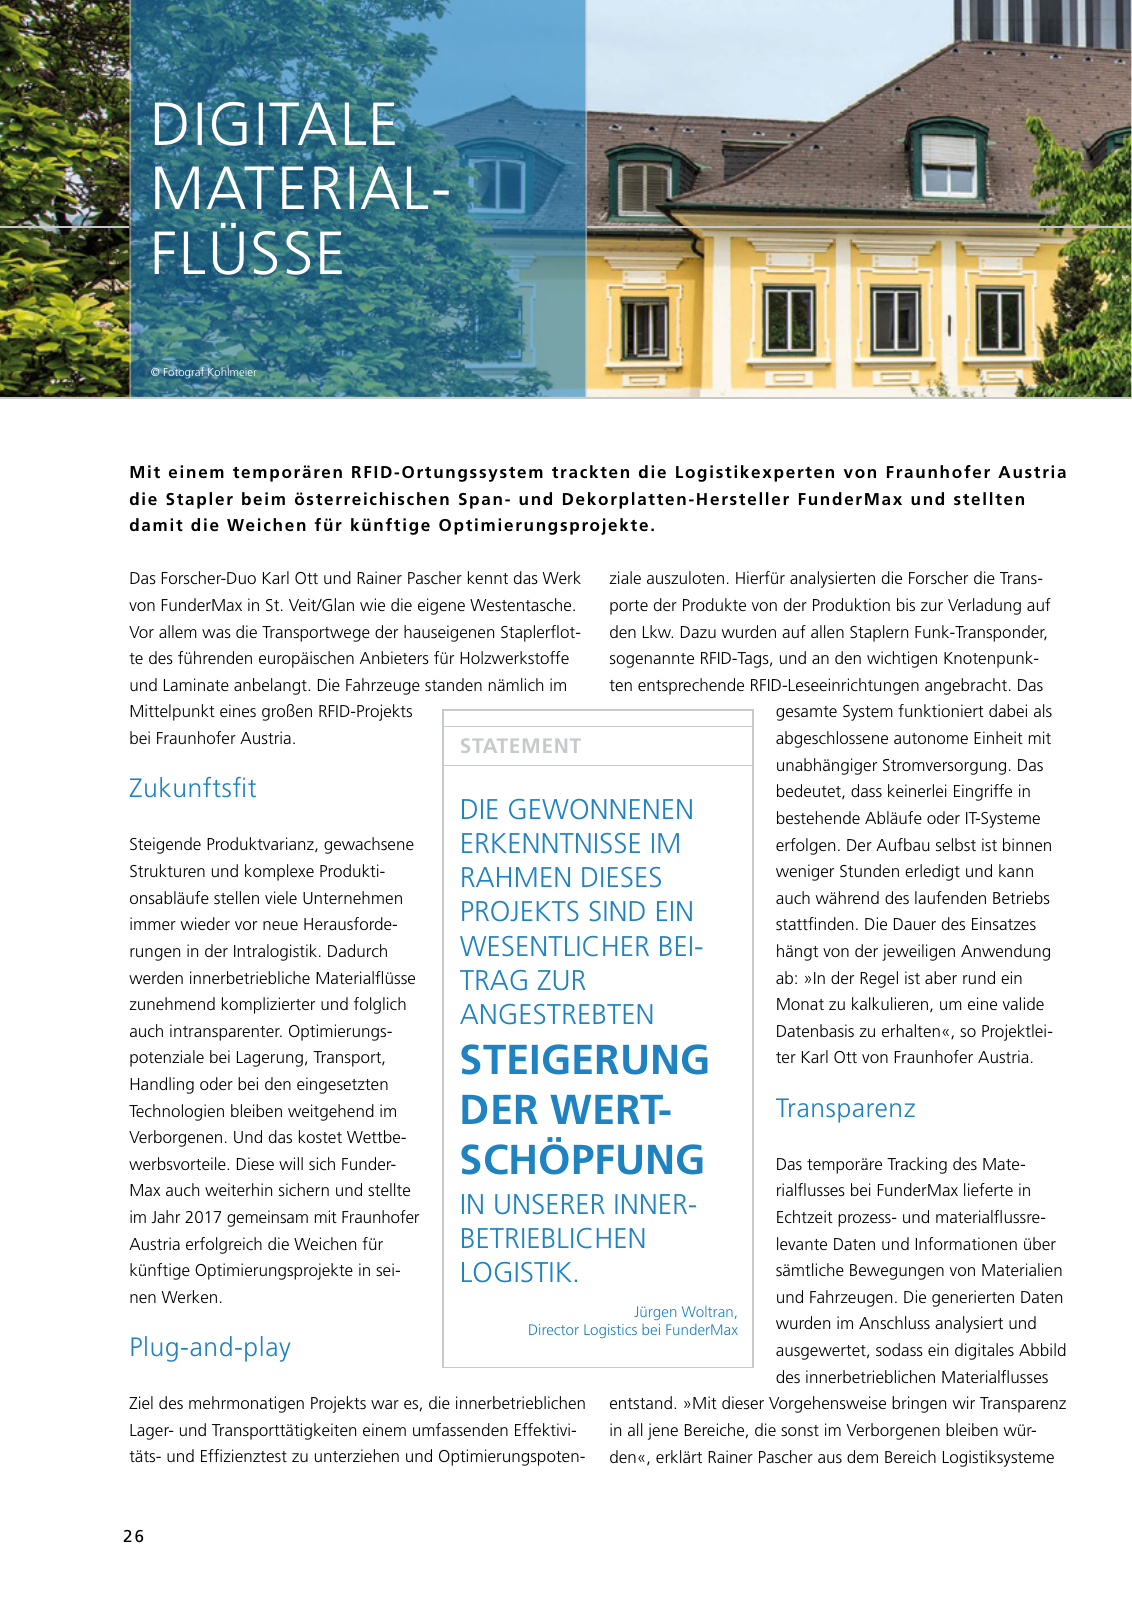 Vorschau Jahresbericht 2017 - Fraunhofer Austria Geschäftsbereich Produktions- und Logistikmanagment Seite 26